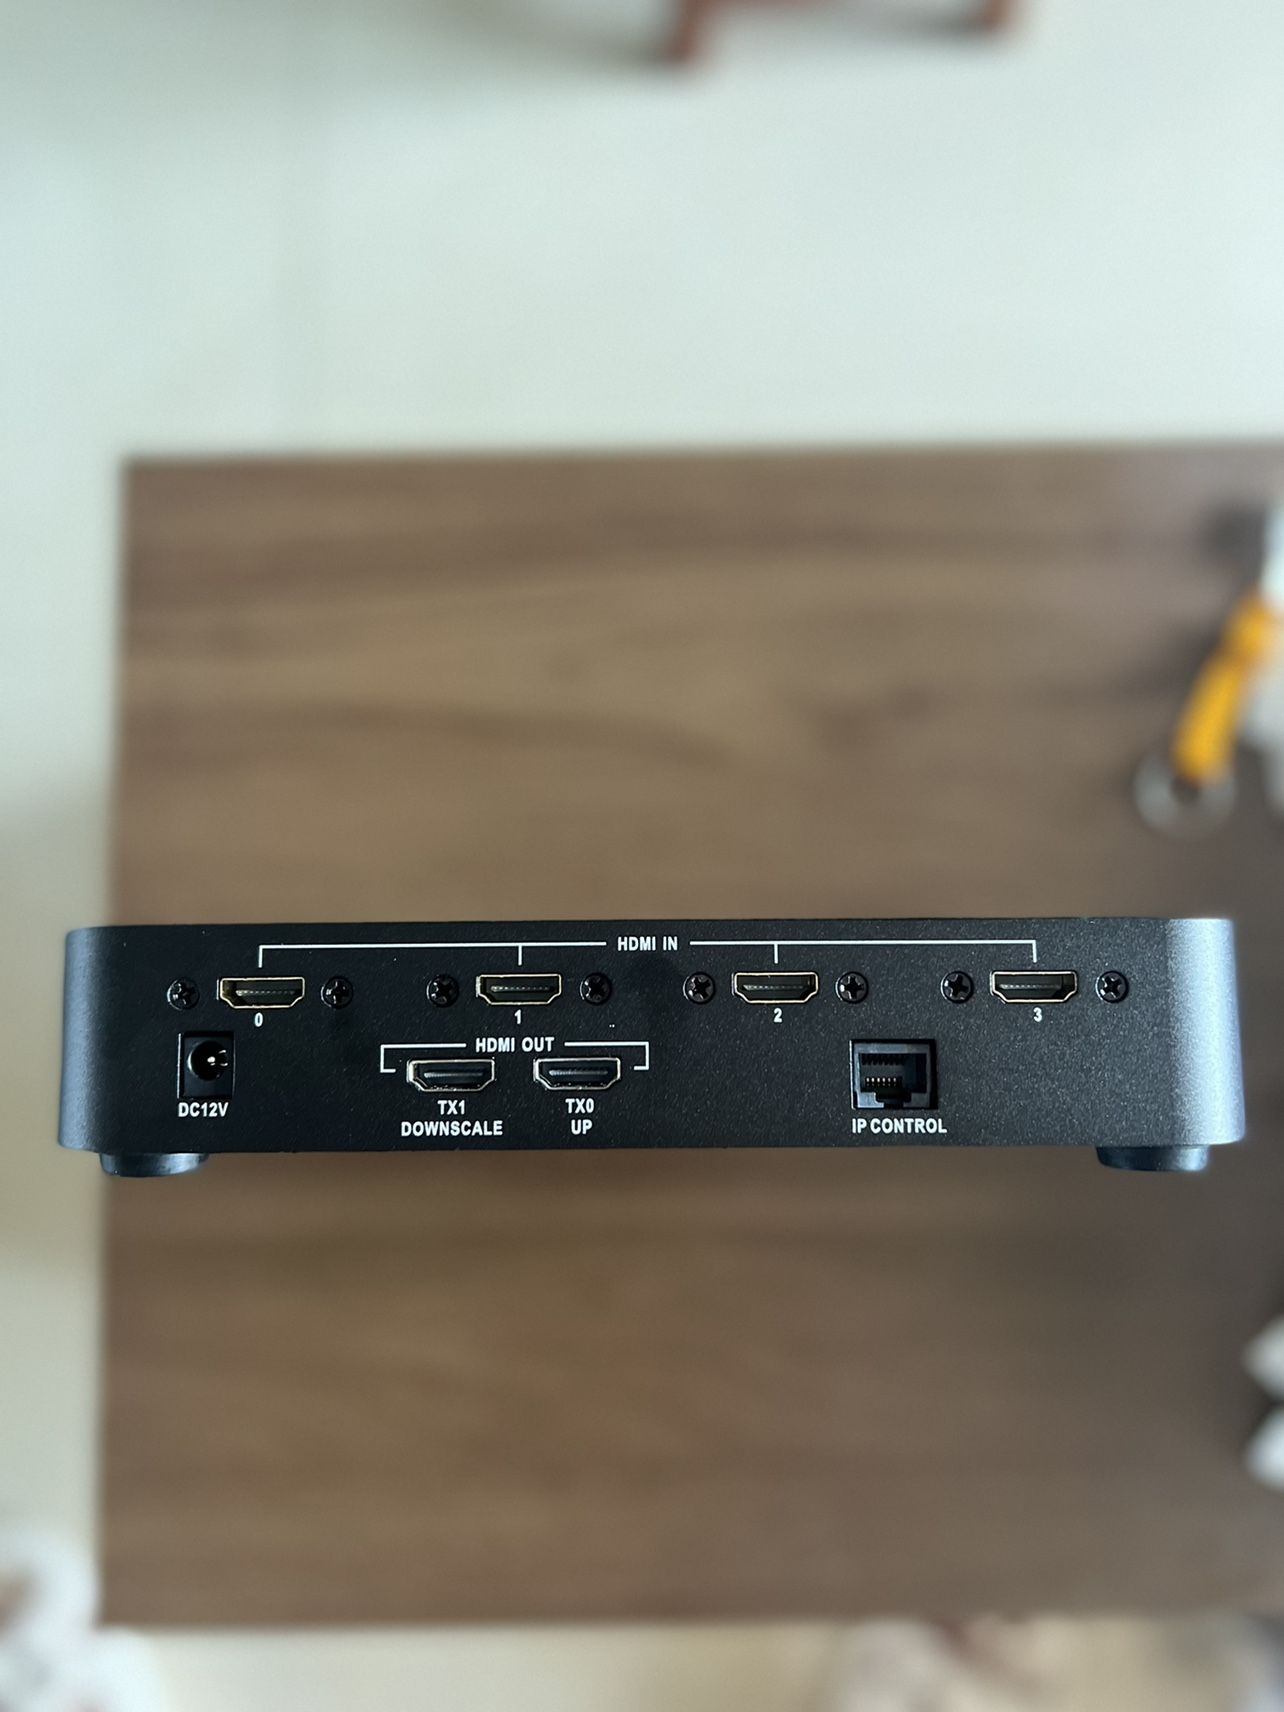 杜比DTS解码器解码板 USB Host SPDIF光纤5.1输出,发烧友级产品 - 安防批发交易网